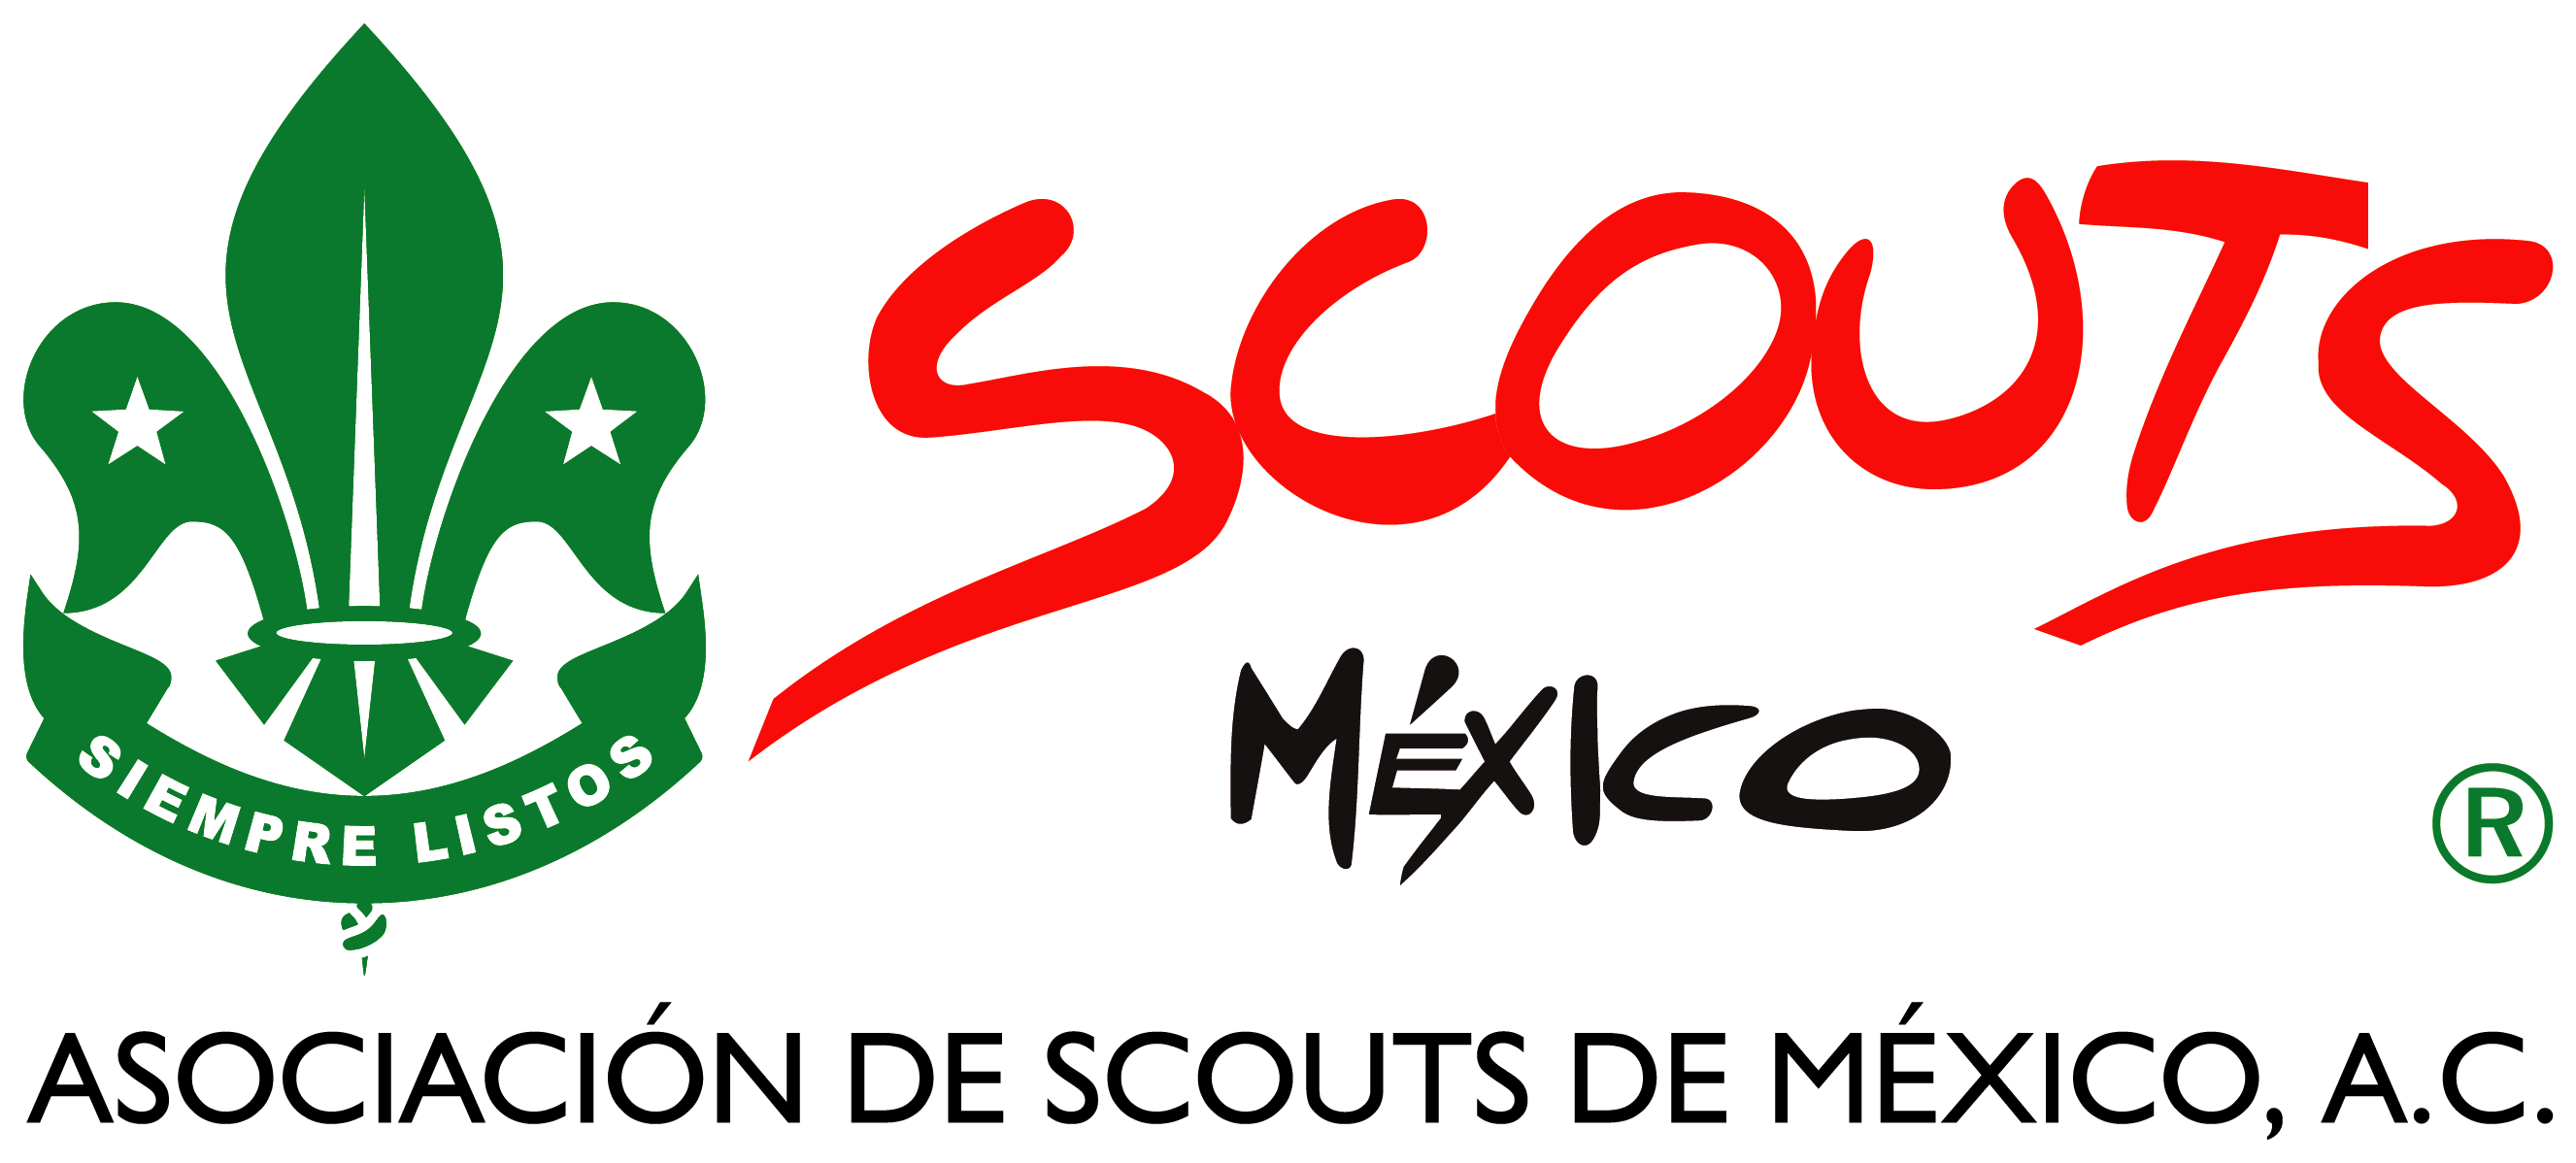 Comunidad Digital de Conocimiento Asociación de Scouts de México A.C.